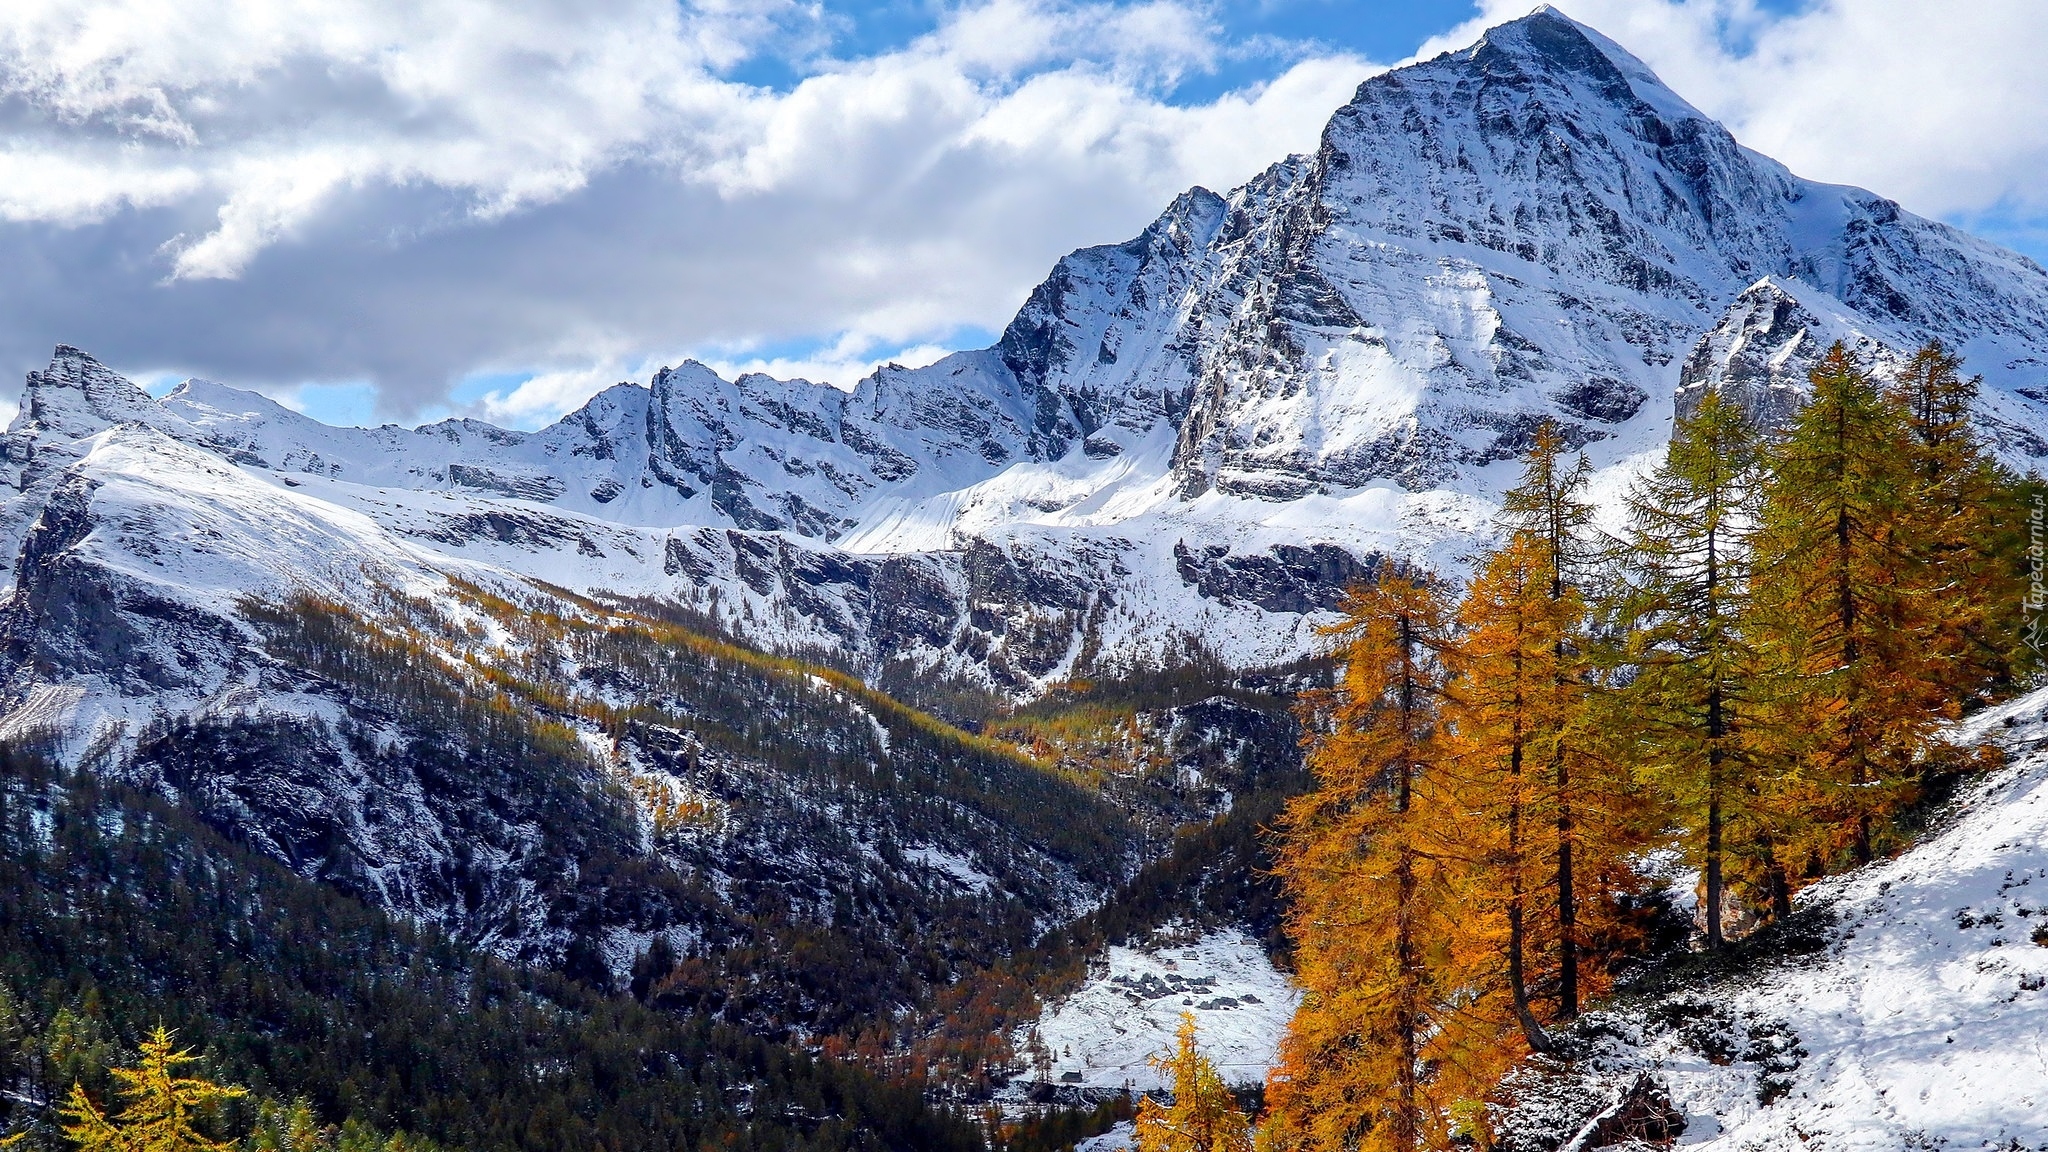 Zima, Góry, Śnieg, Żółte, Drzewa, Modrzewie, Park przyrody Alpe Veglia i Alpe Devero, Włochy